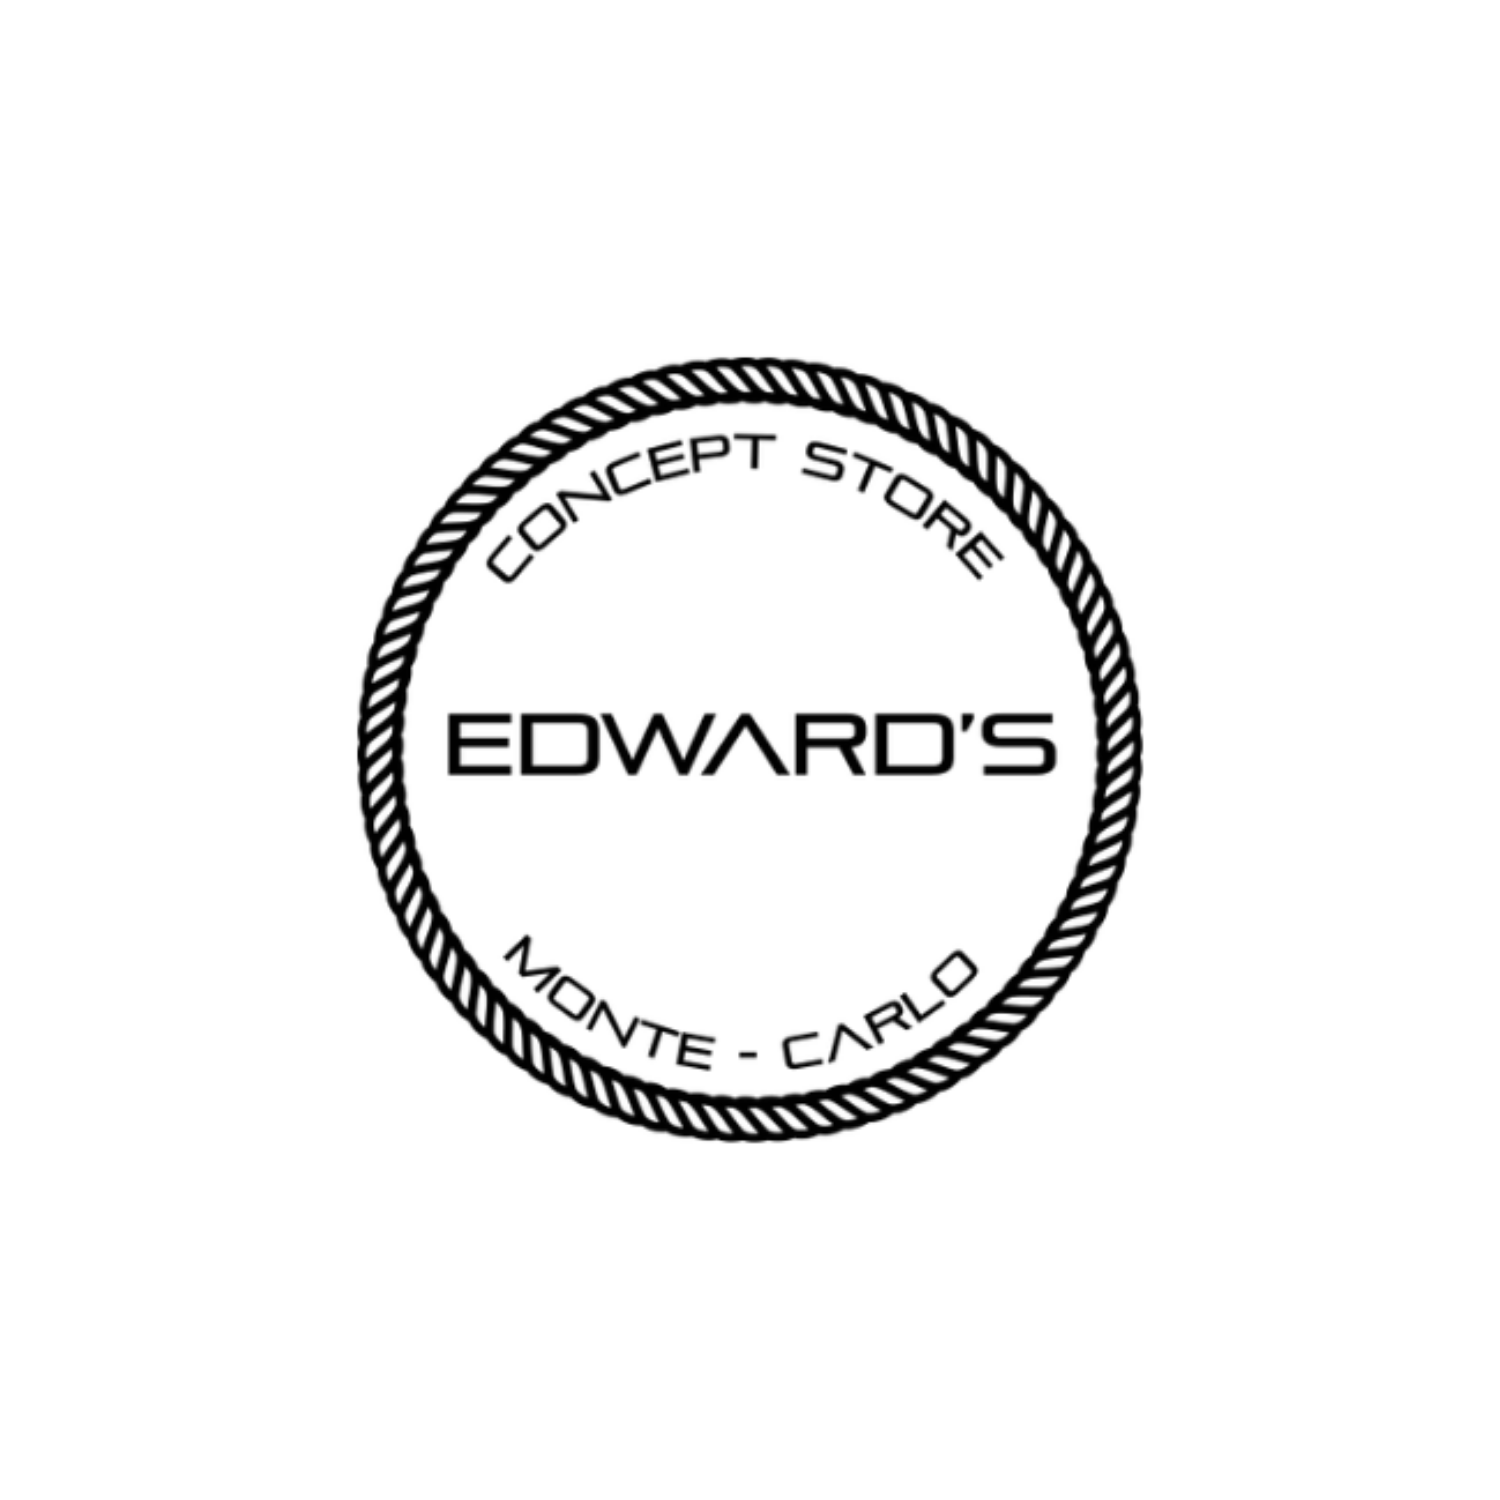 edwards-monaco-carlo-app-comerciante-pret-a-porter